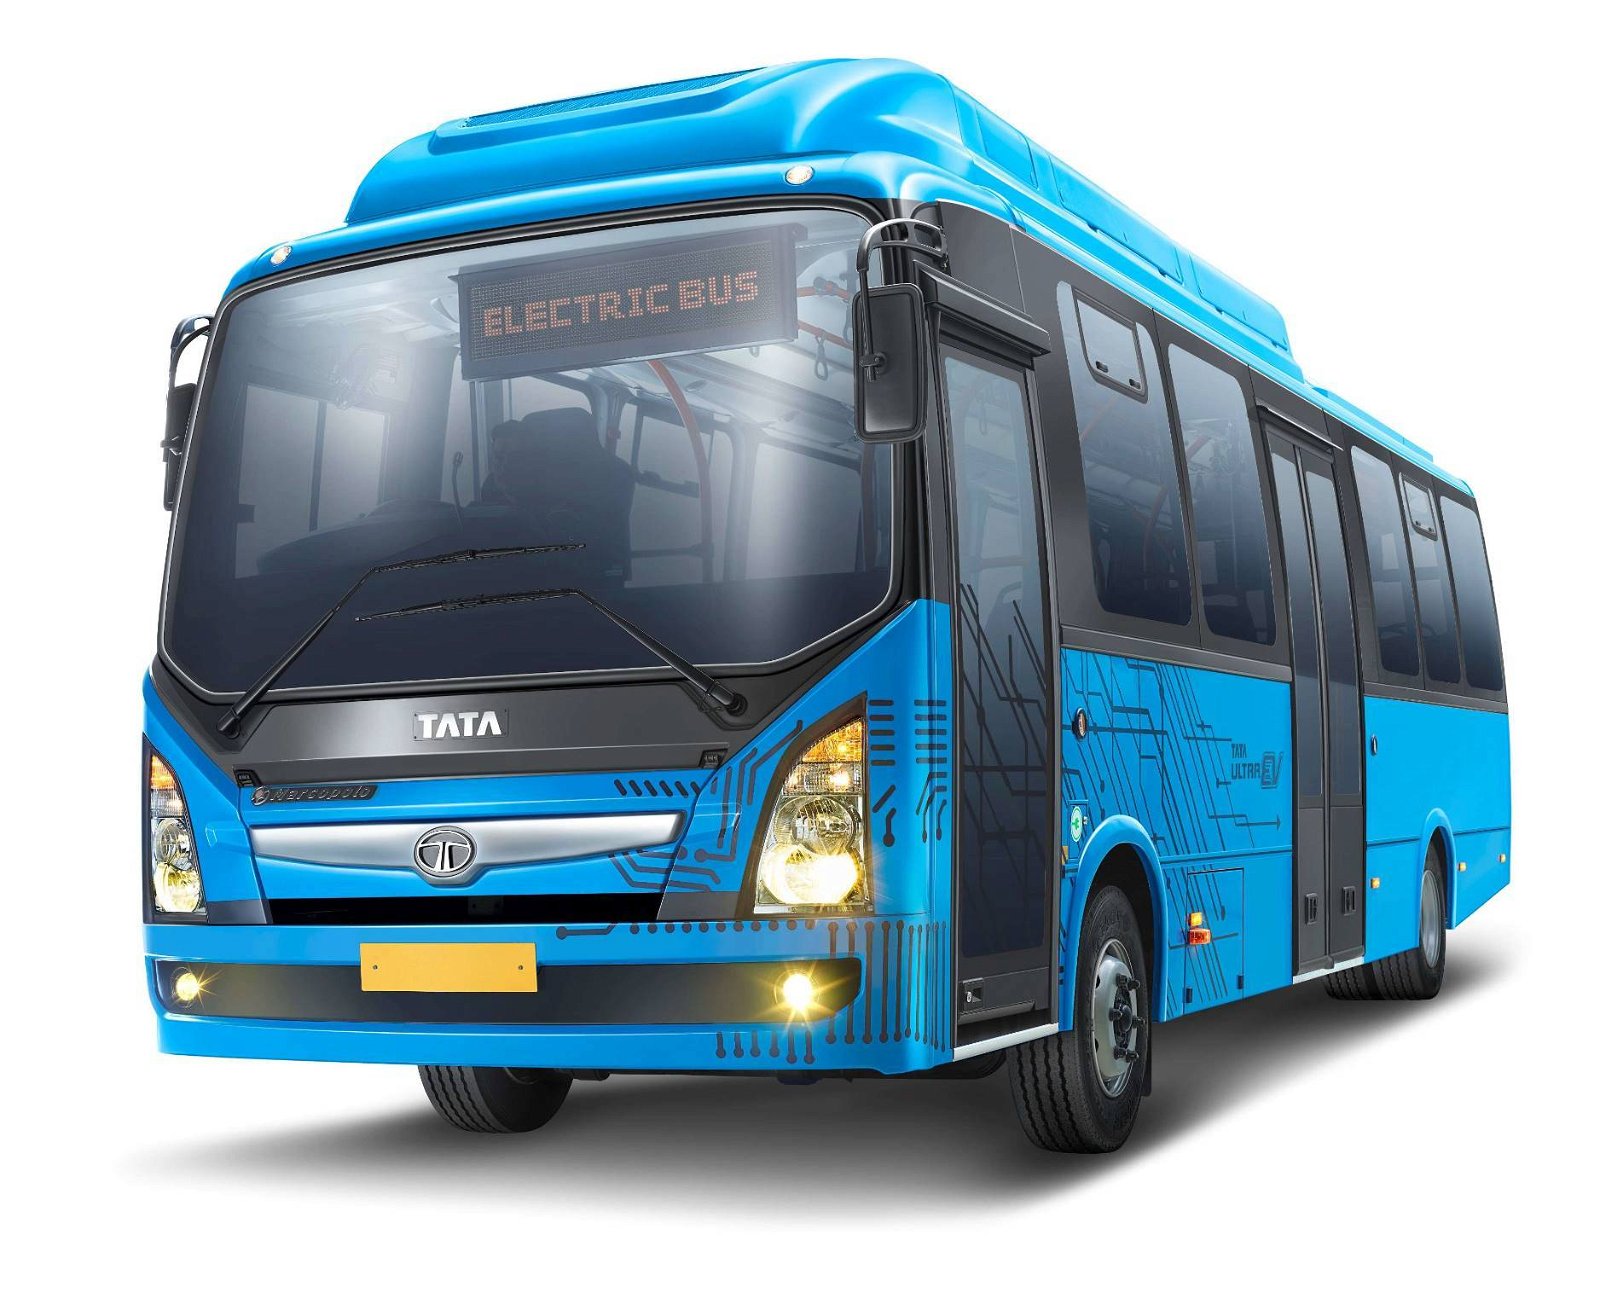 Immagine di Tata, nuovo contratto di fornitura per 300 e-bus in India